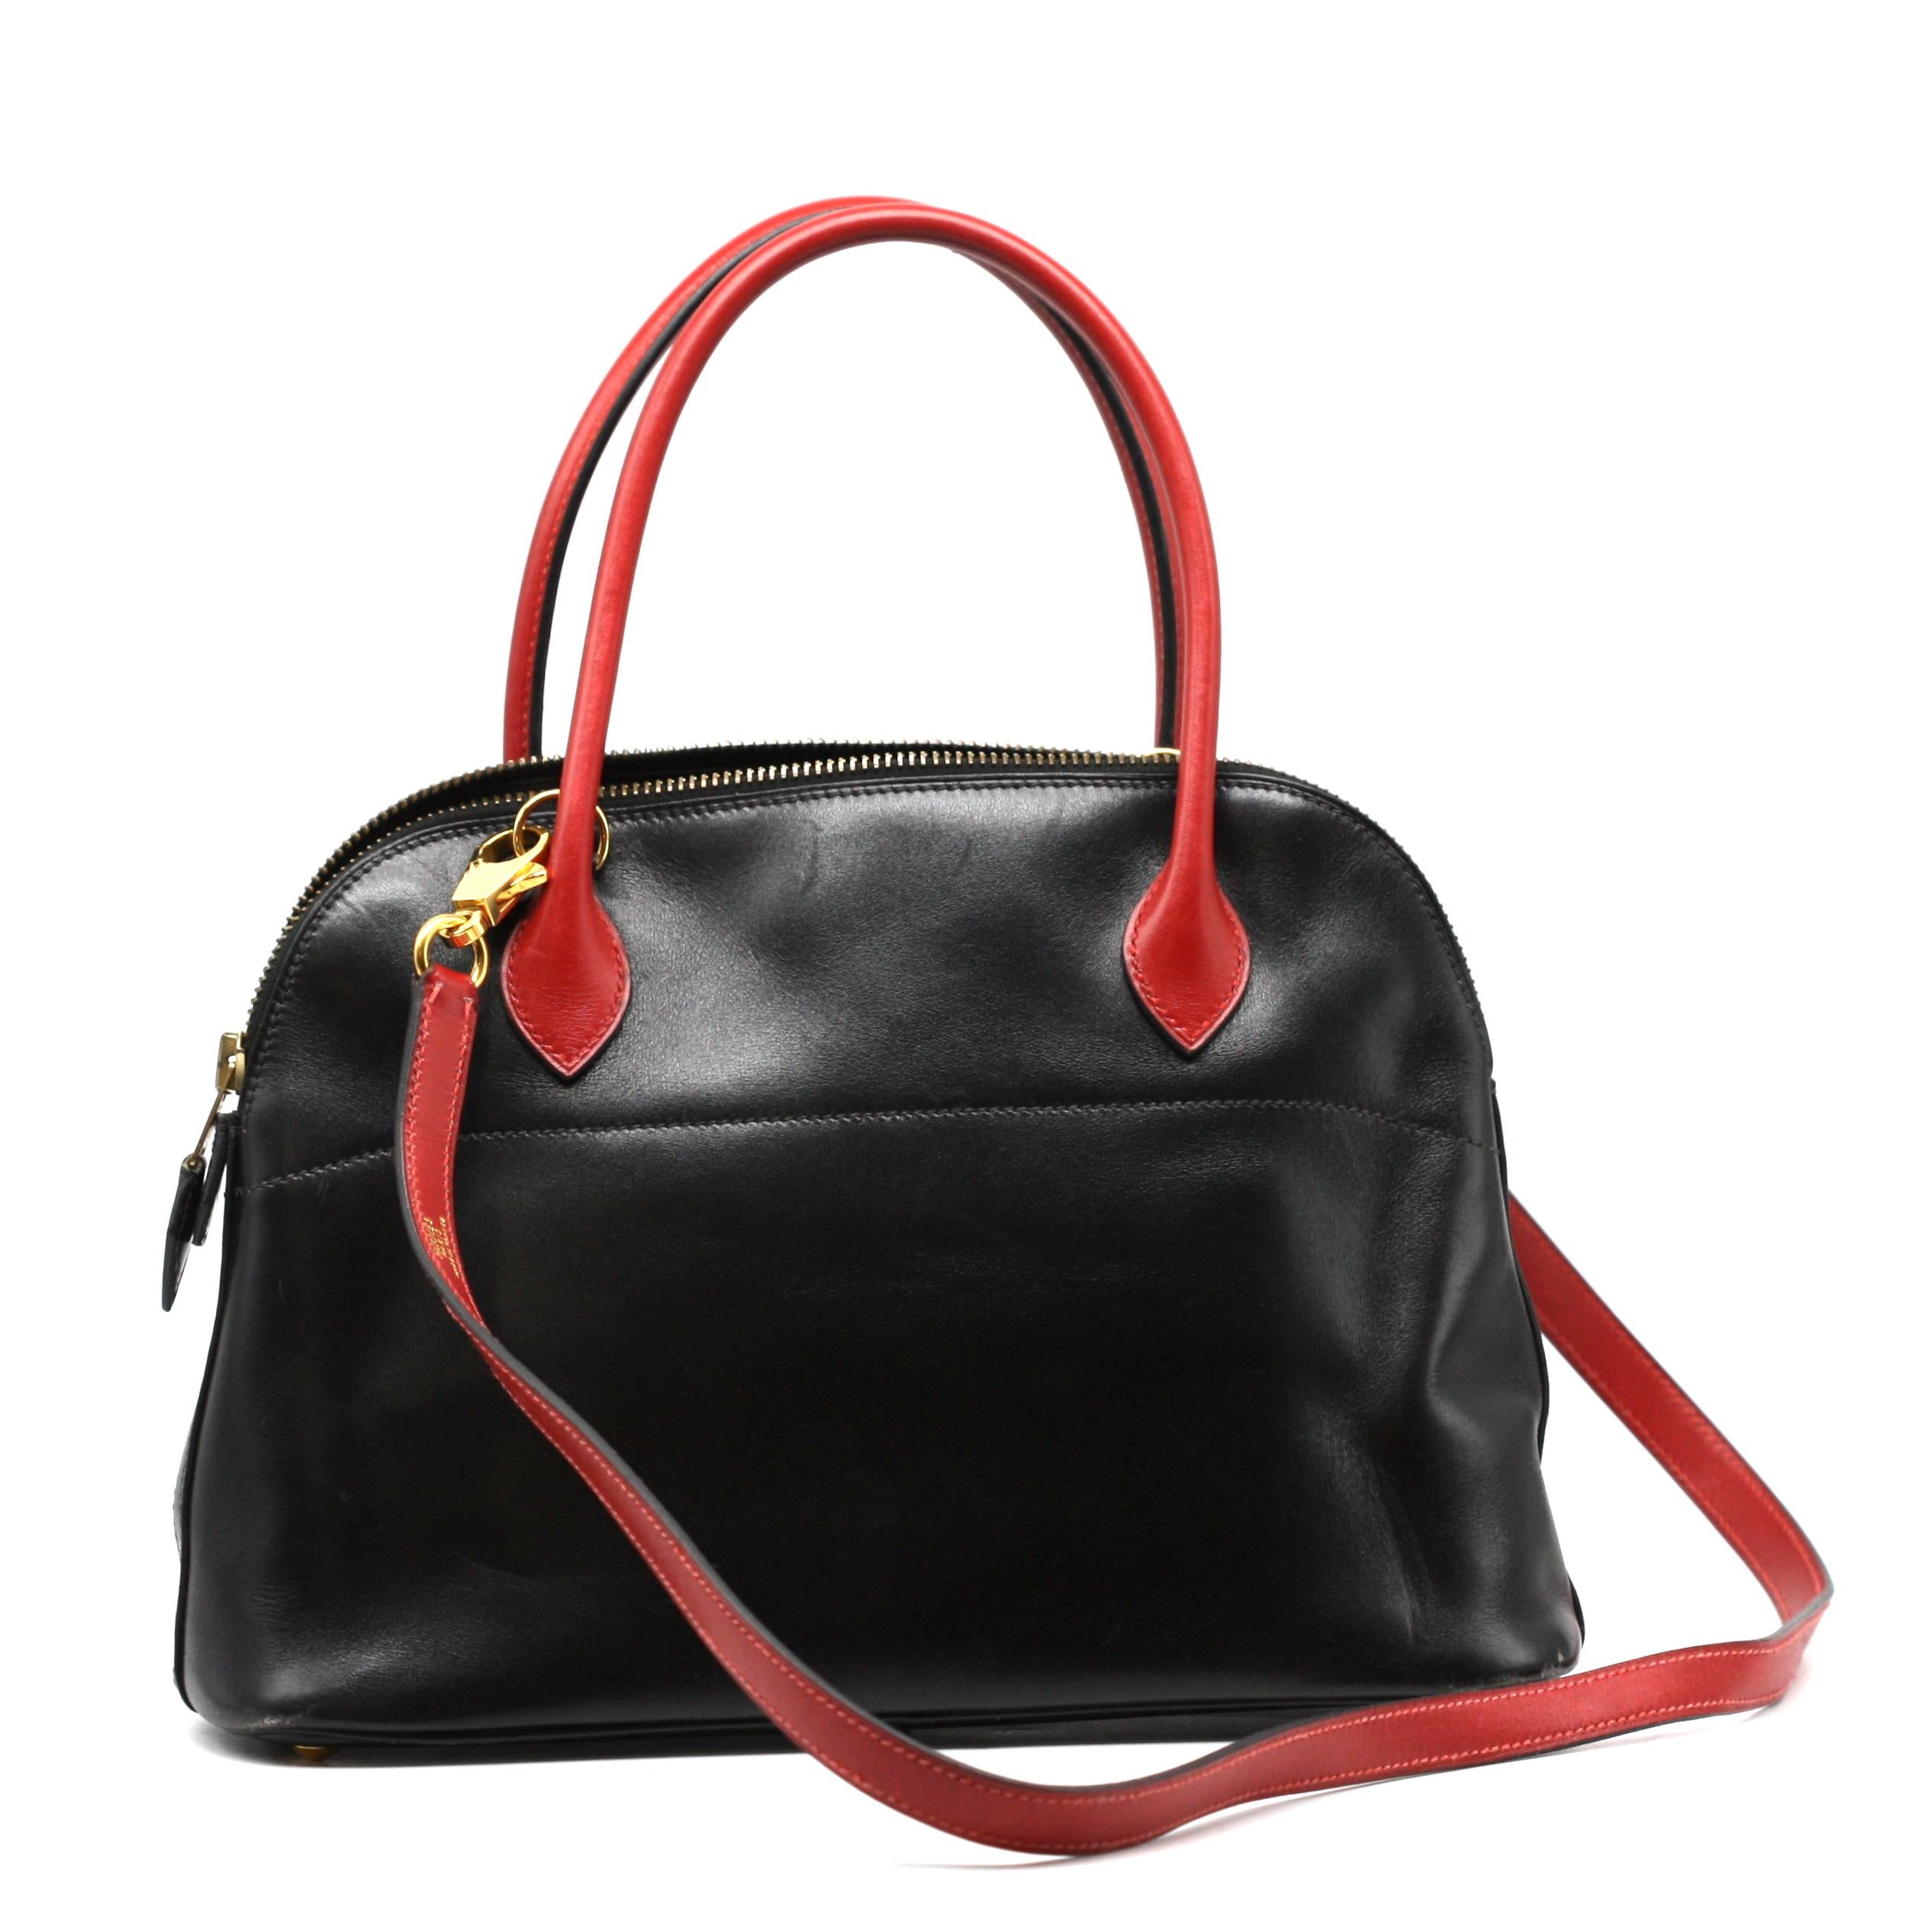 

Hermes Box Bolide-Handtasche aus schwarzem und rotem Kalbsleder
ungefähre Größe:
11 Zoll bis zur Oberkante des Griffs, 7 Zoll Höhe, Bodenbreite 8 Zoll, 3 Zoll tief
